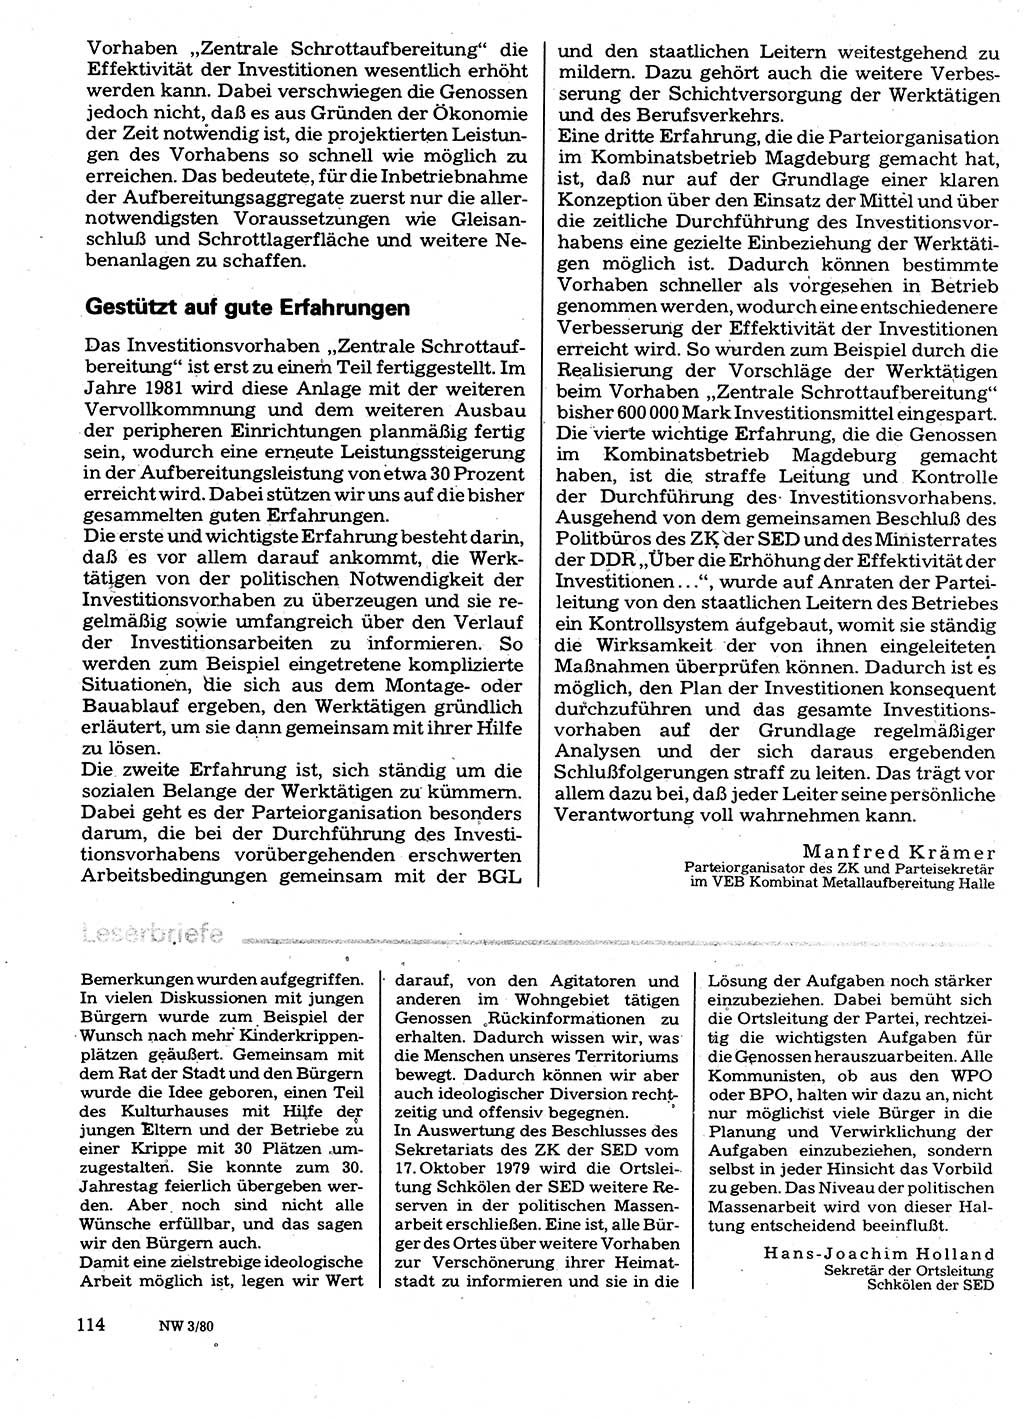 Neuer Weg (NW), Organ des Zentralkomitees (ZK) der SED (Sozialistische Einheitspartei Deutschlands) für Fragen des Parteilebens, 35. Jahrgang [Deutsche Demokratische Republik (DDR)] 1980, Seite 114 (NW ZK SED DDR 1980, S. 114)